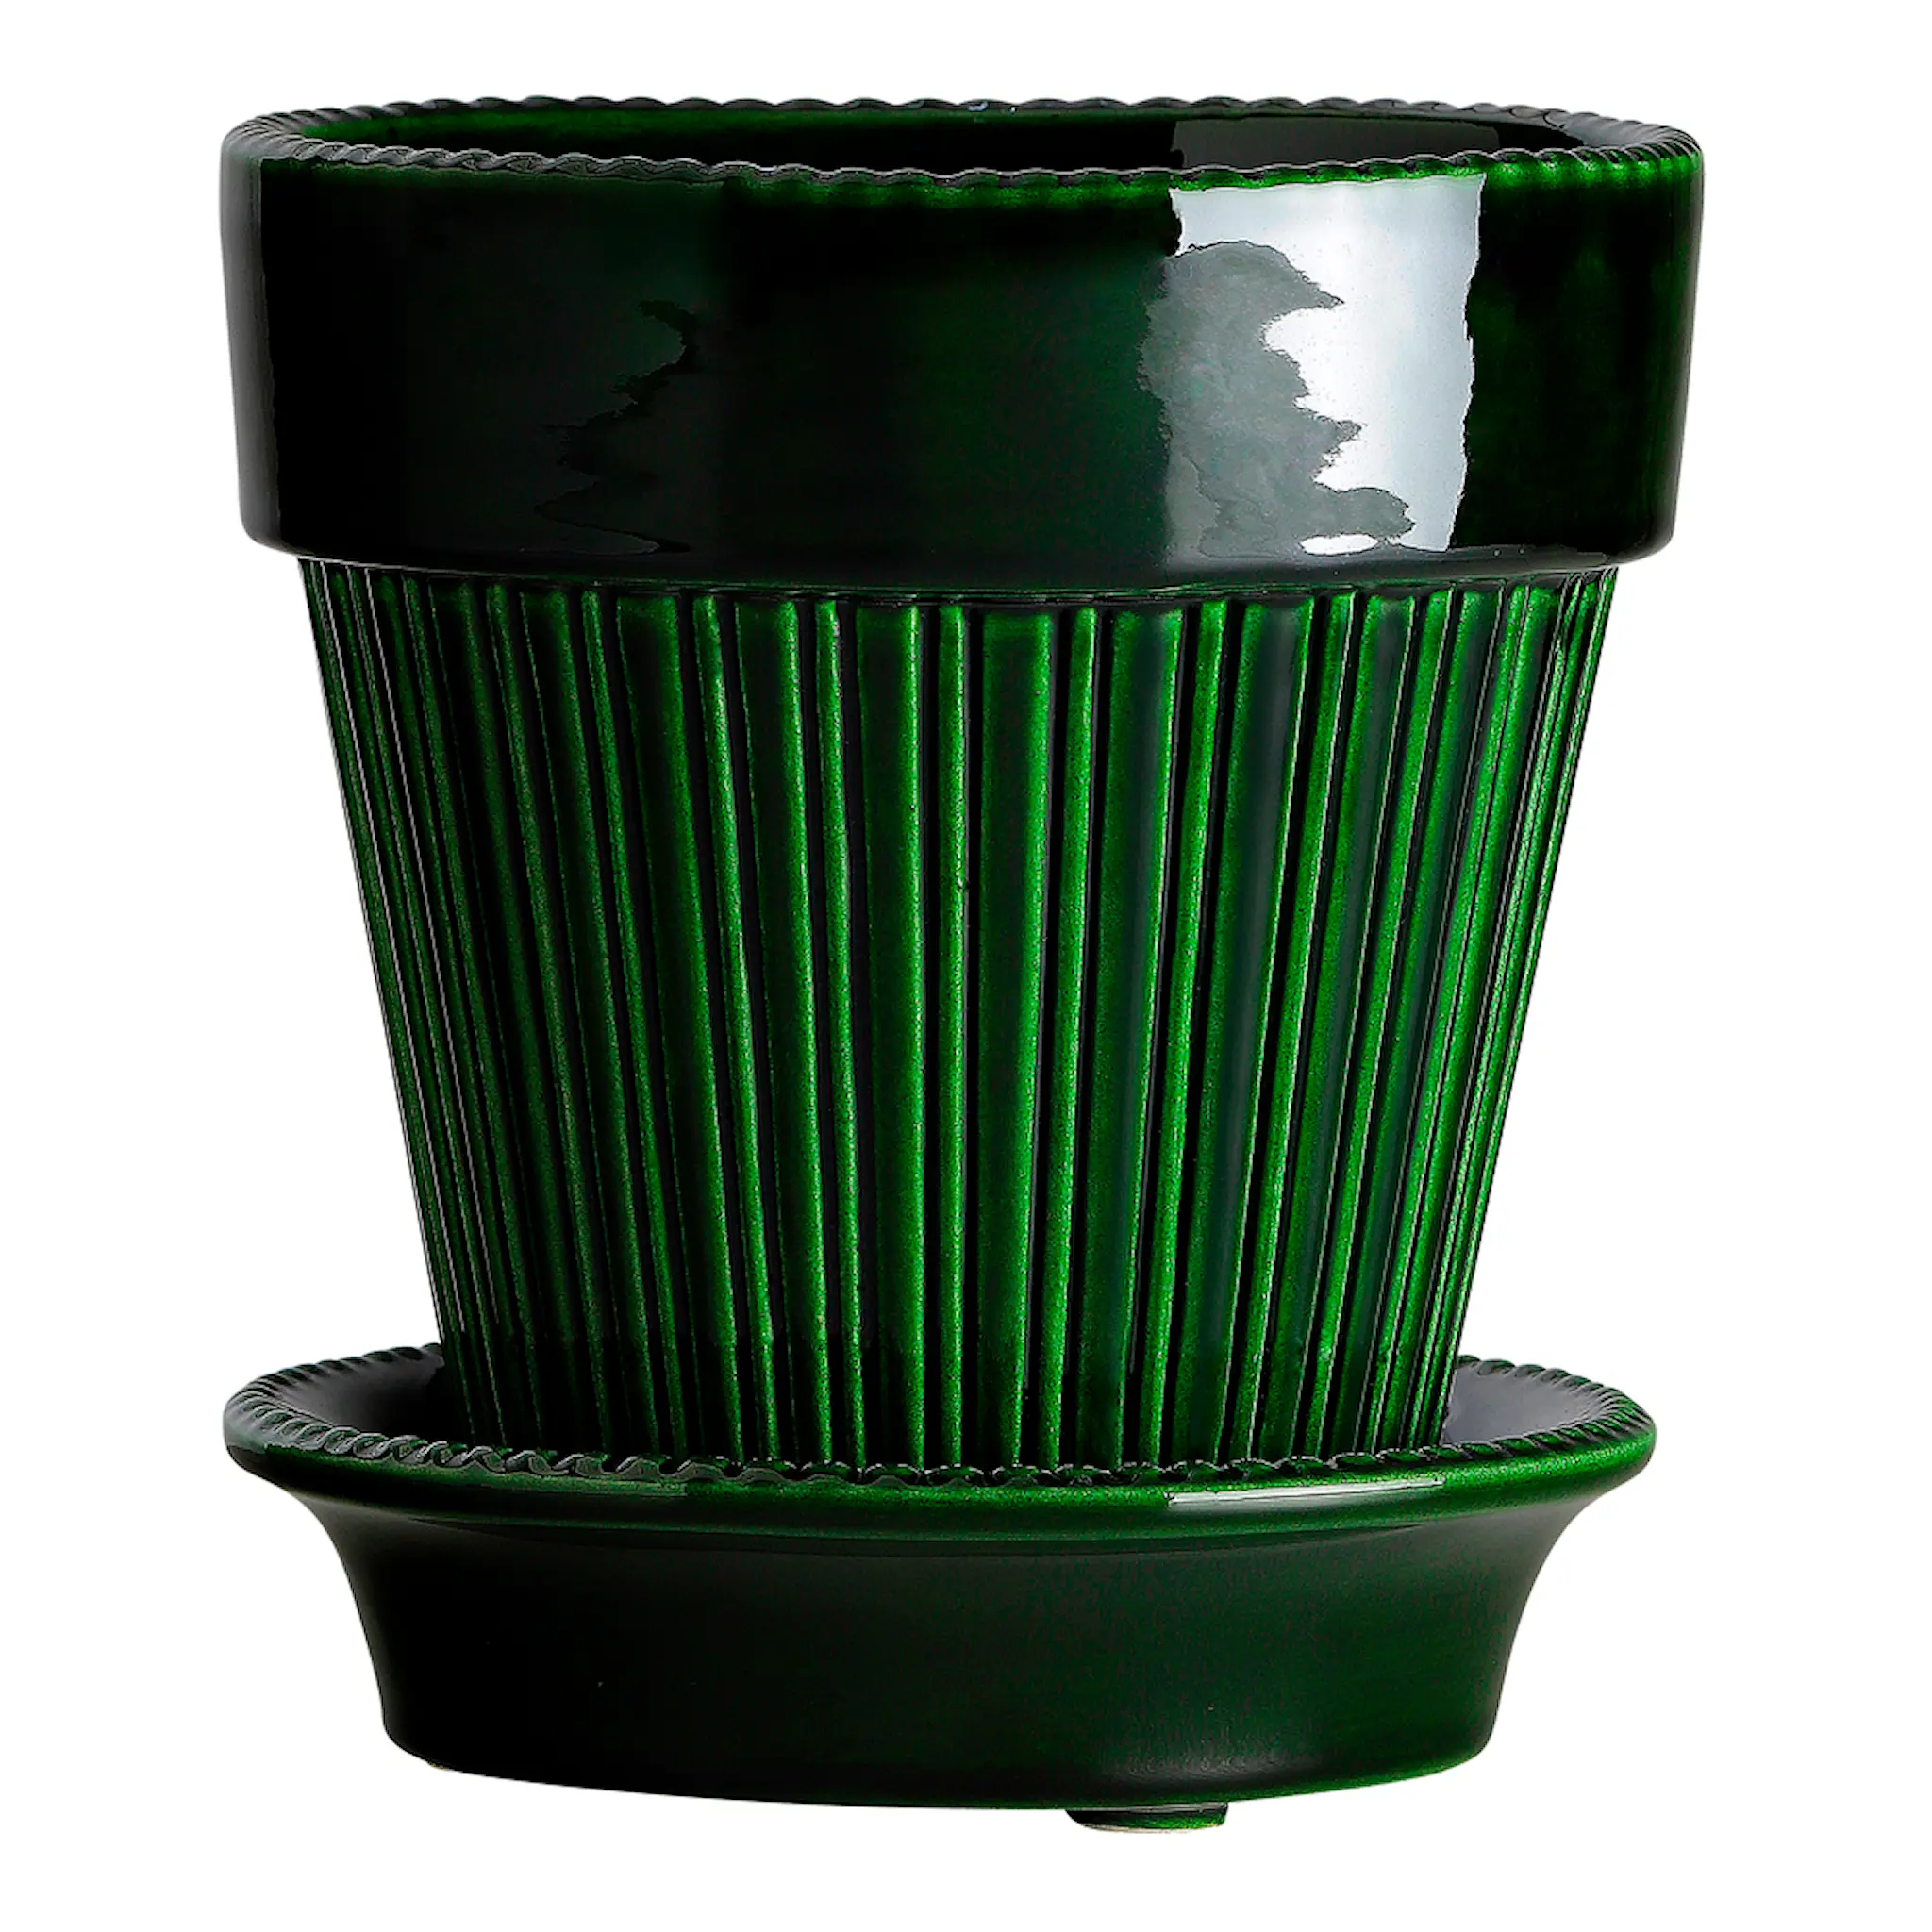 Bergs Potter Simona krukke/fat 18 cm grønn emerald